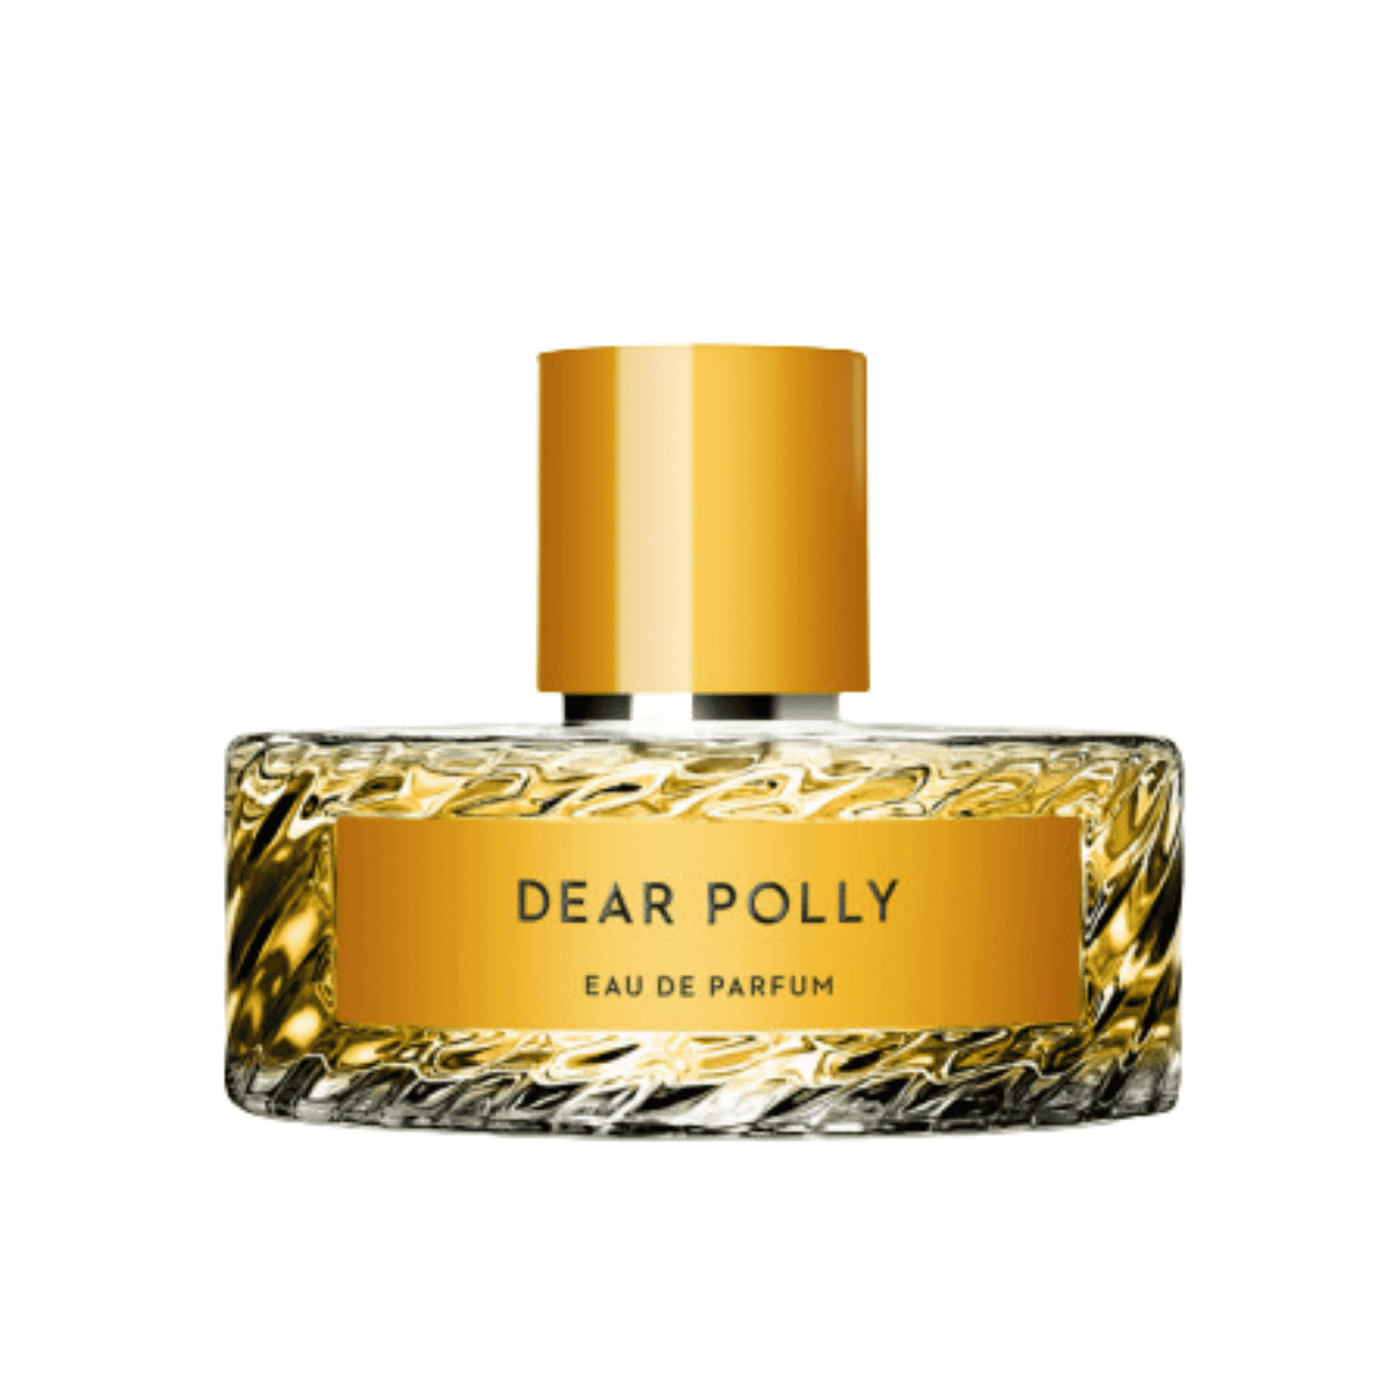 Dear Polly perfume